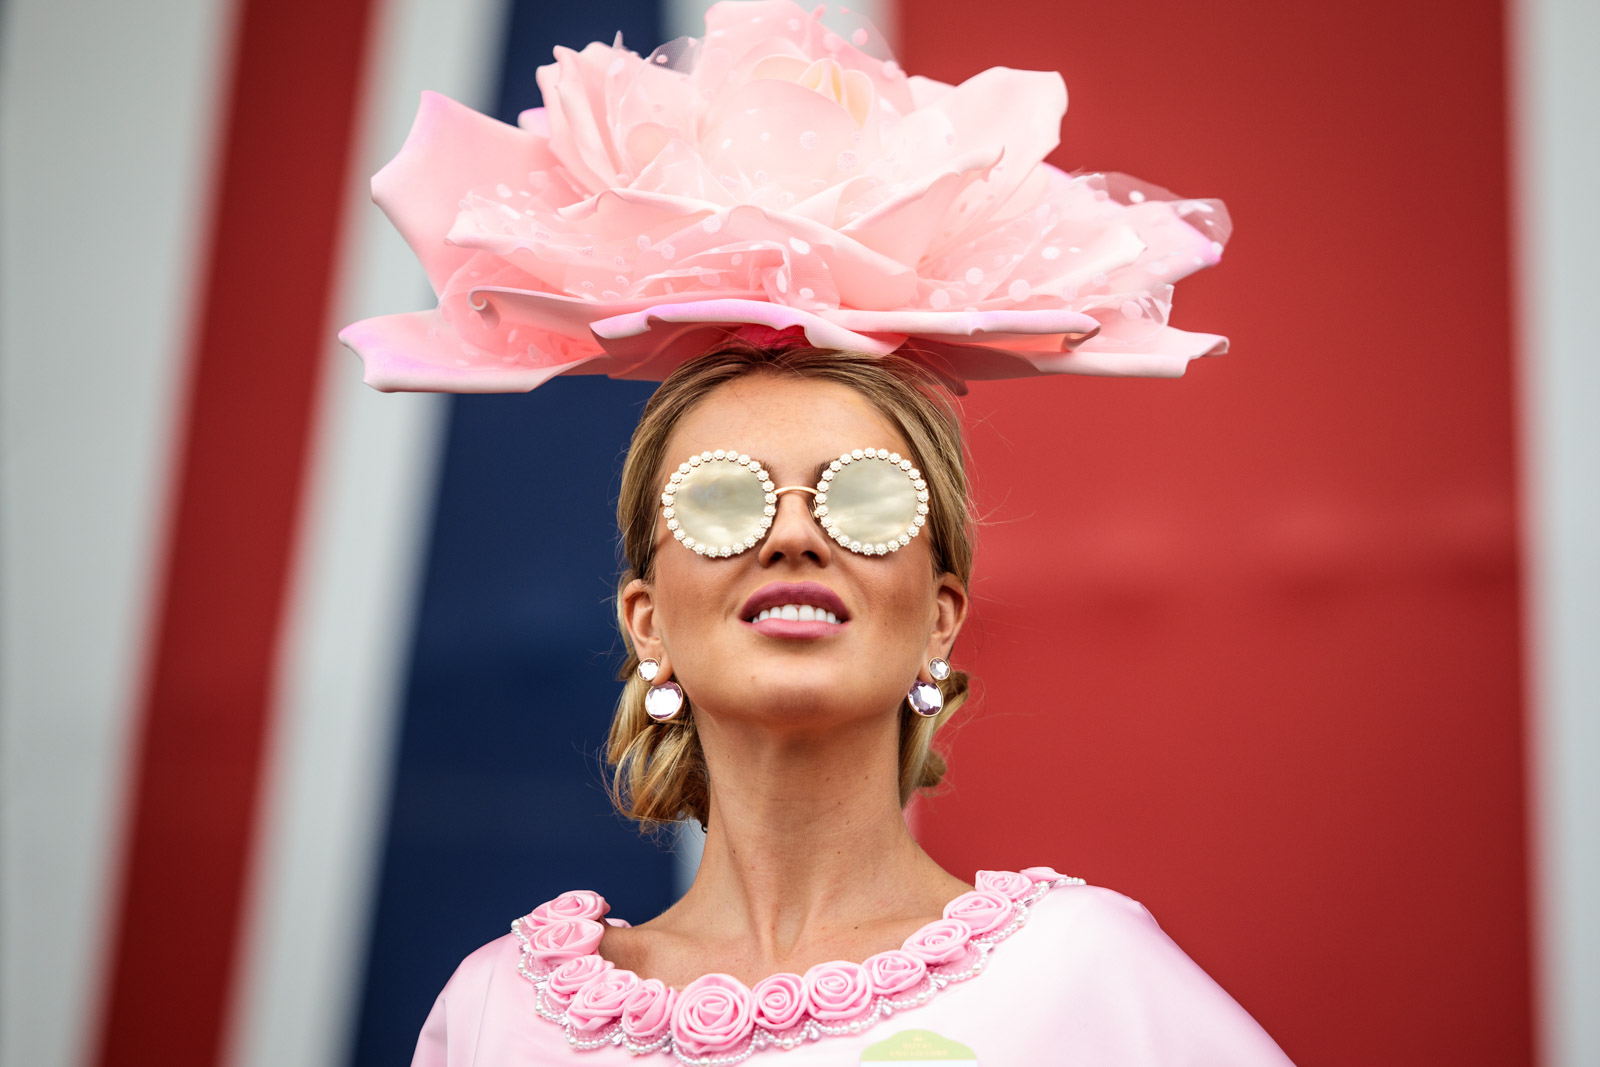  Model Natalia Kapchuk poses for a photograph at Royal Ascot 2017 at Ascot Racecourse on June 22, 2017 in Ascot. 